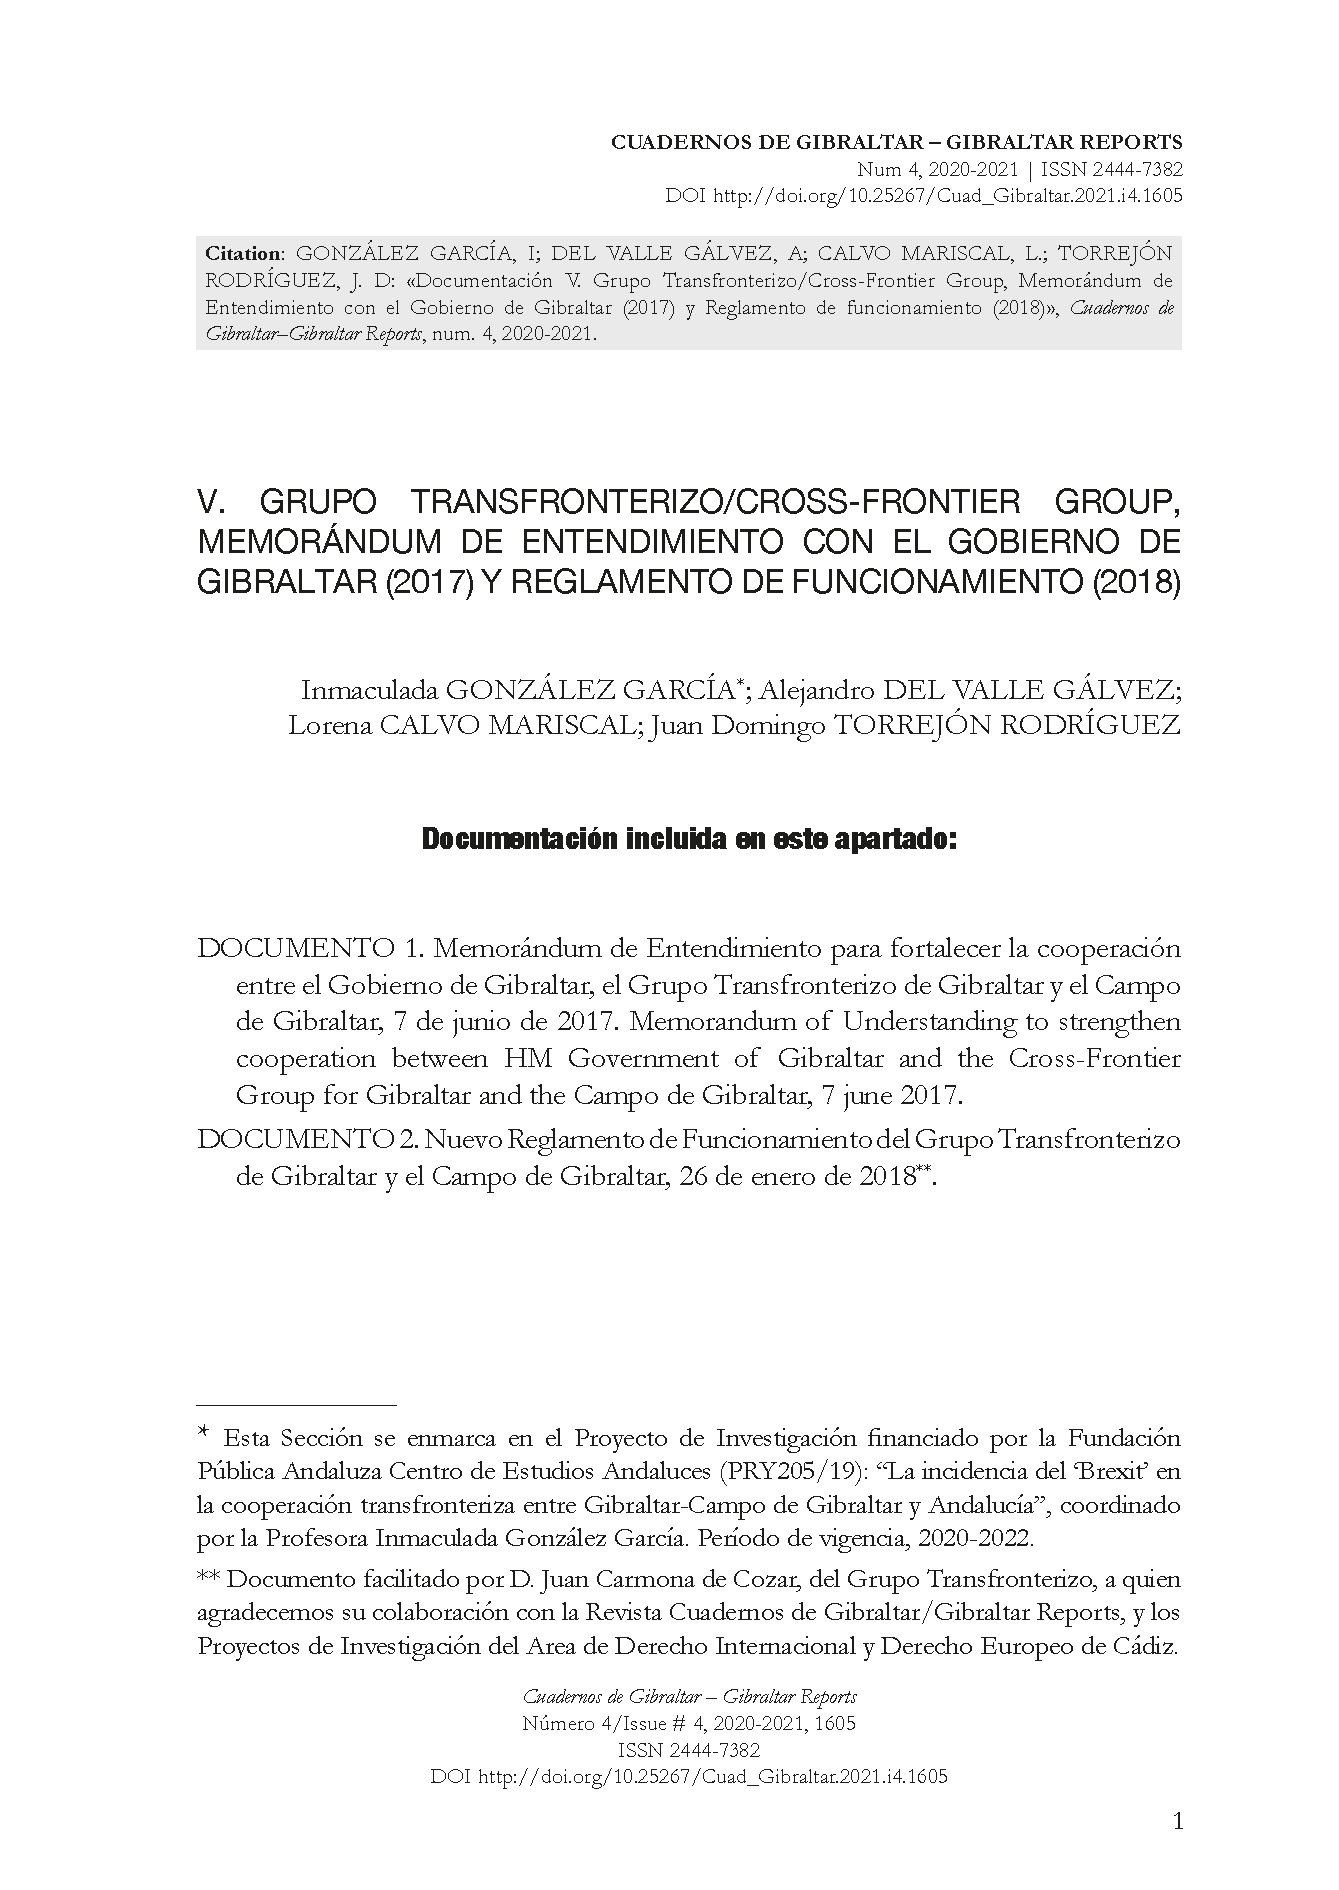 Documentación V. Grupo Transfronterizo/Cross-Frontier Group, Memorándum de Entendimiento con el Gobierno de Gibraltar (2017) y Reglamento de funcionamiento (2018)